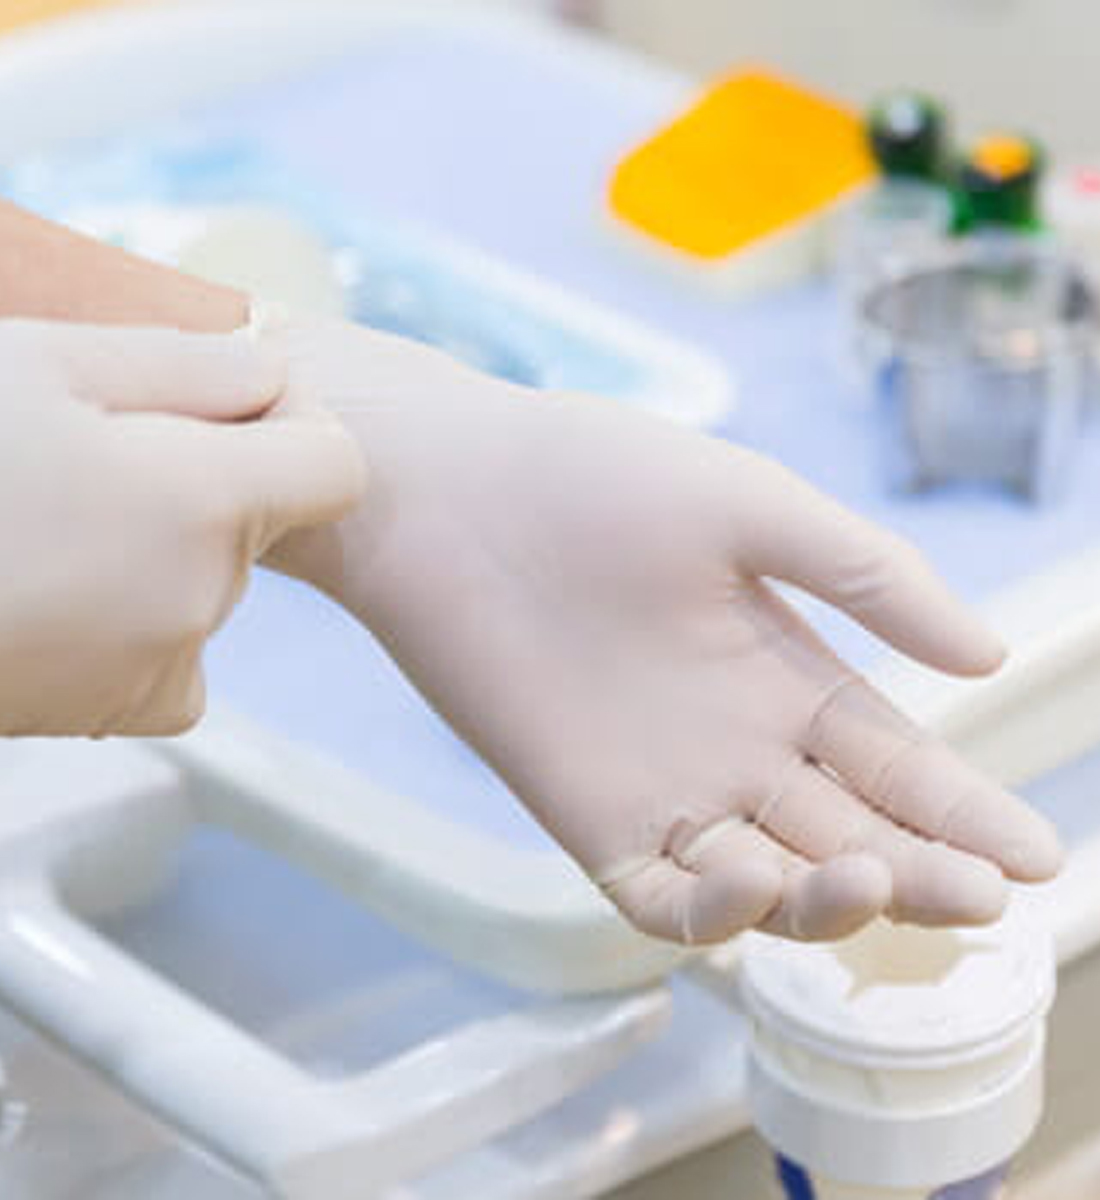 患者様ごとに手袋を変えて清潔な状態を保っています